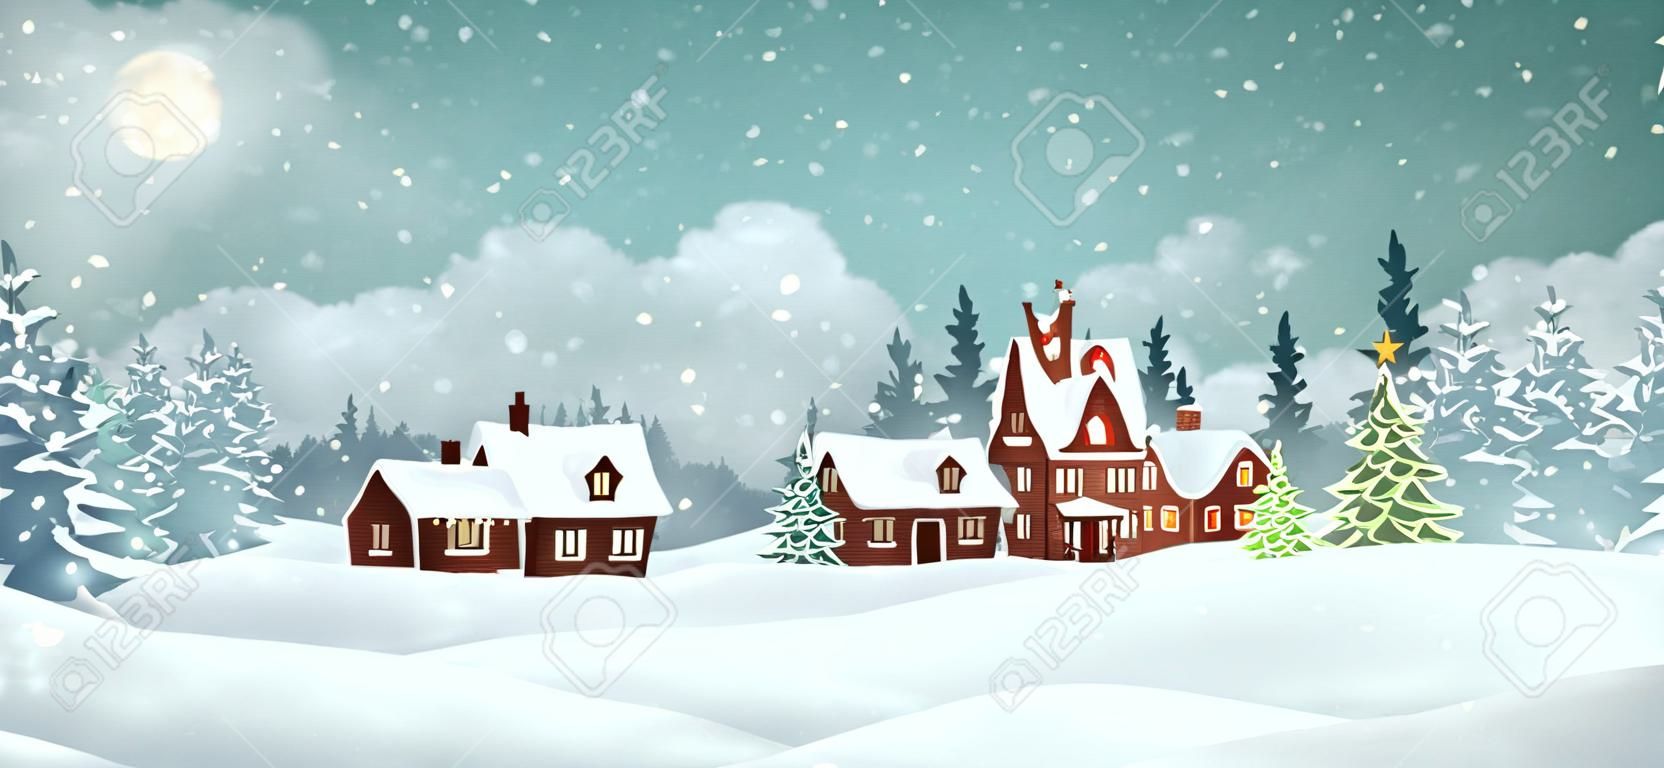 Weihnachtsdorfhäuser mit Winterkiefernwald. Weihnachtsferien-Vektor-Illustration